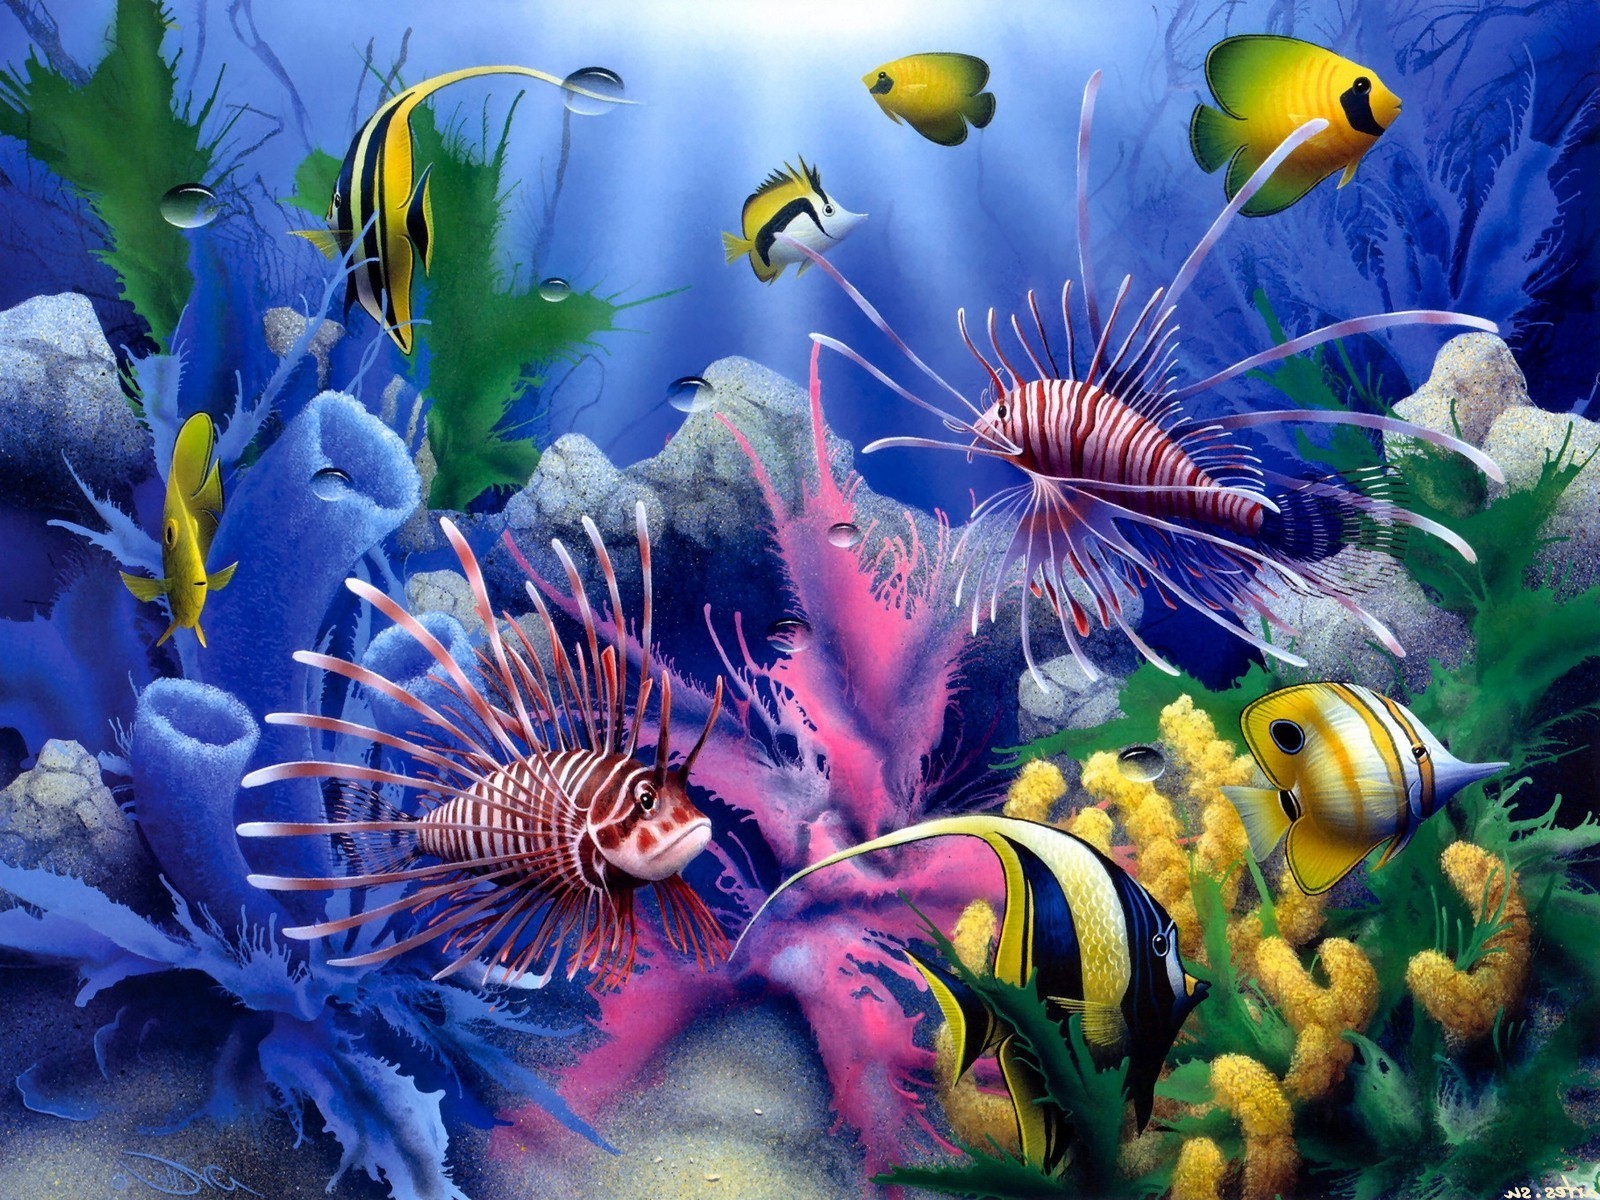 ocean life underwater aquarium fish coral reef tropical aquatic ocean diving deep marine anemone nature tank invertebrate color sea swimming water scuba